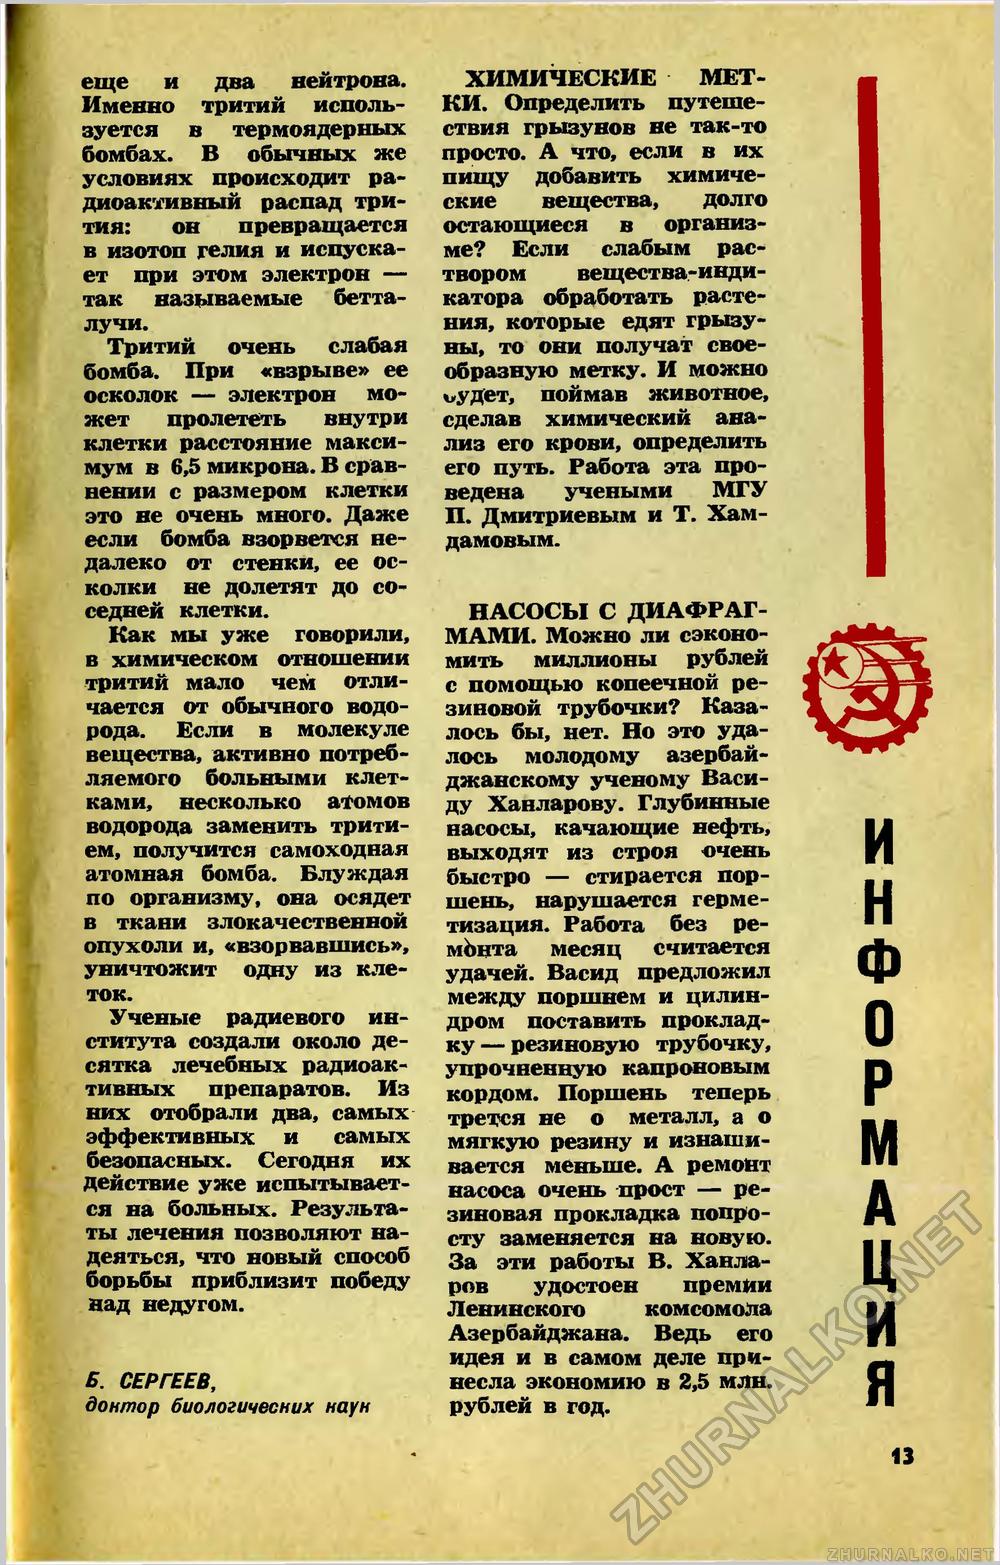   1973-11,  15